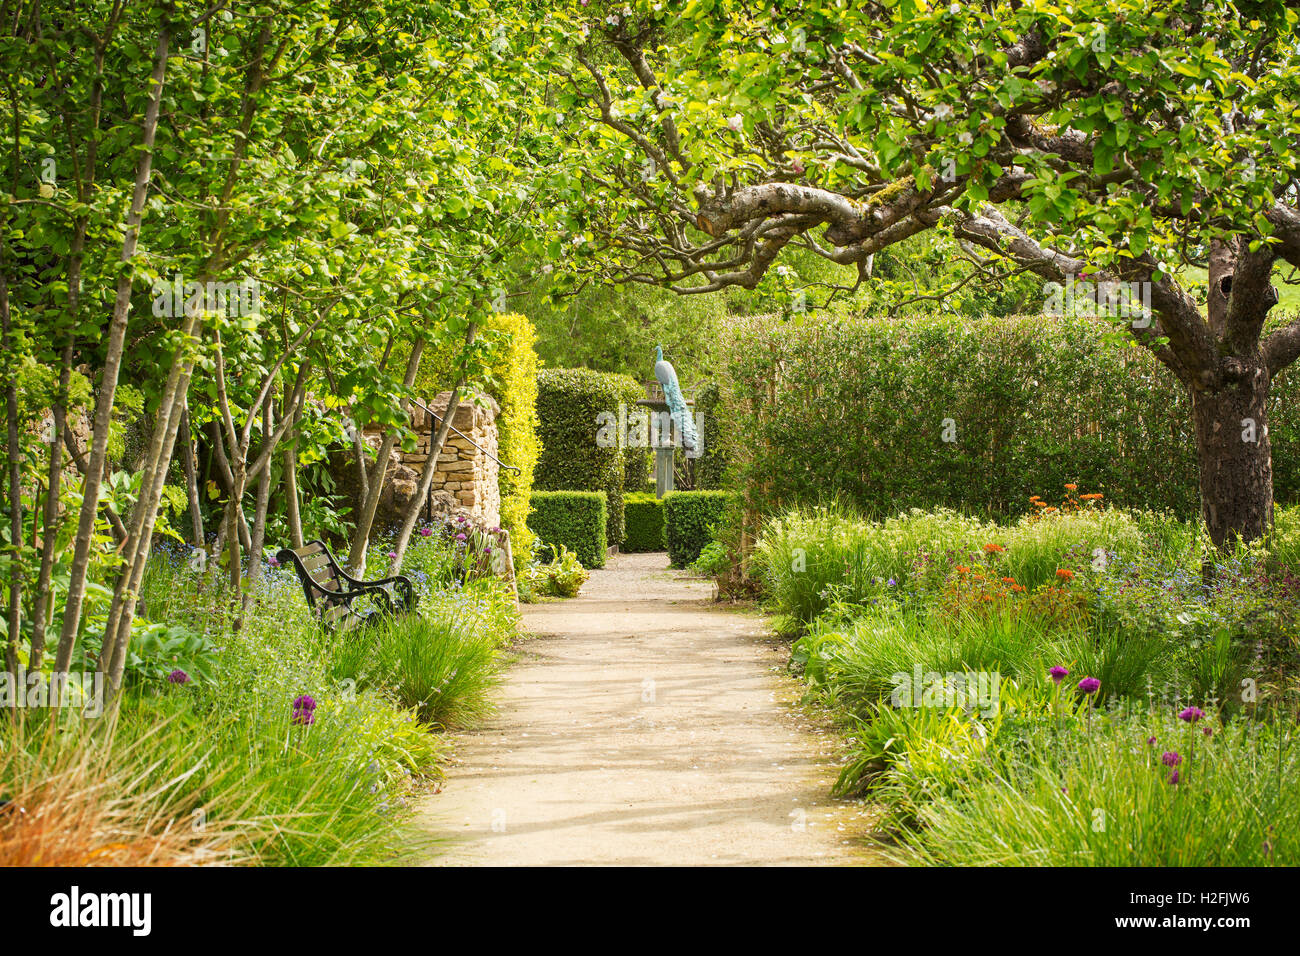 Una ruta entre bordes florales en un jardín con árboles en flor, y setos de la vivienda. Un pavo real encaramado sobre un reloj de sol. Foto de stock